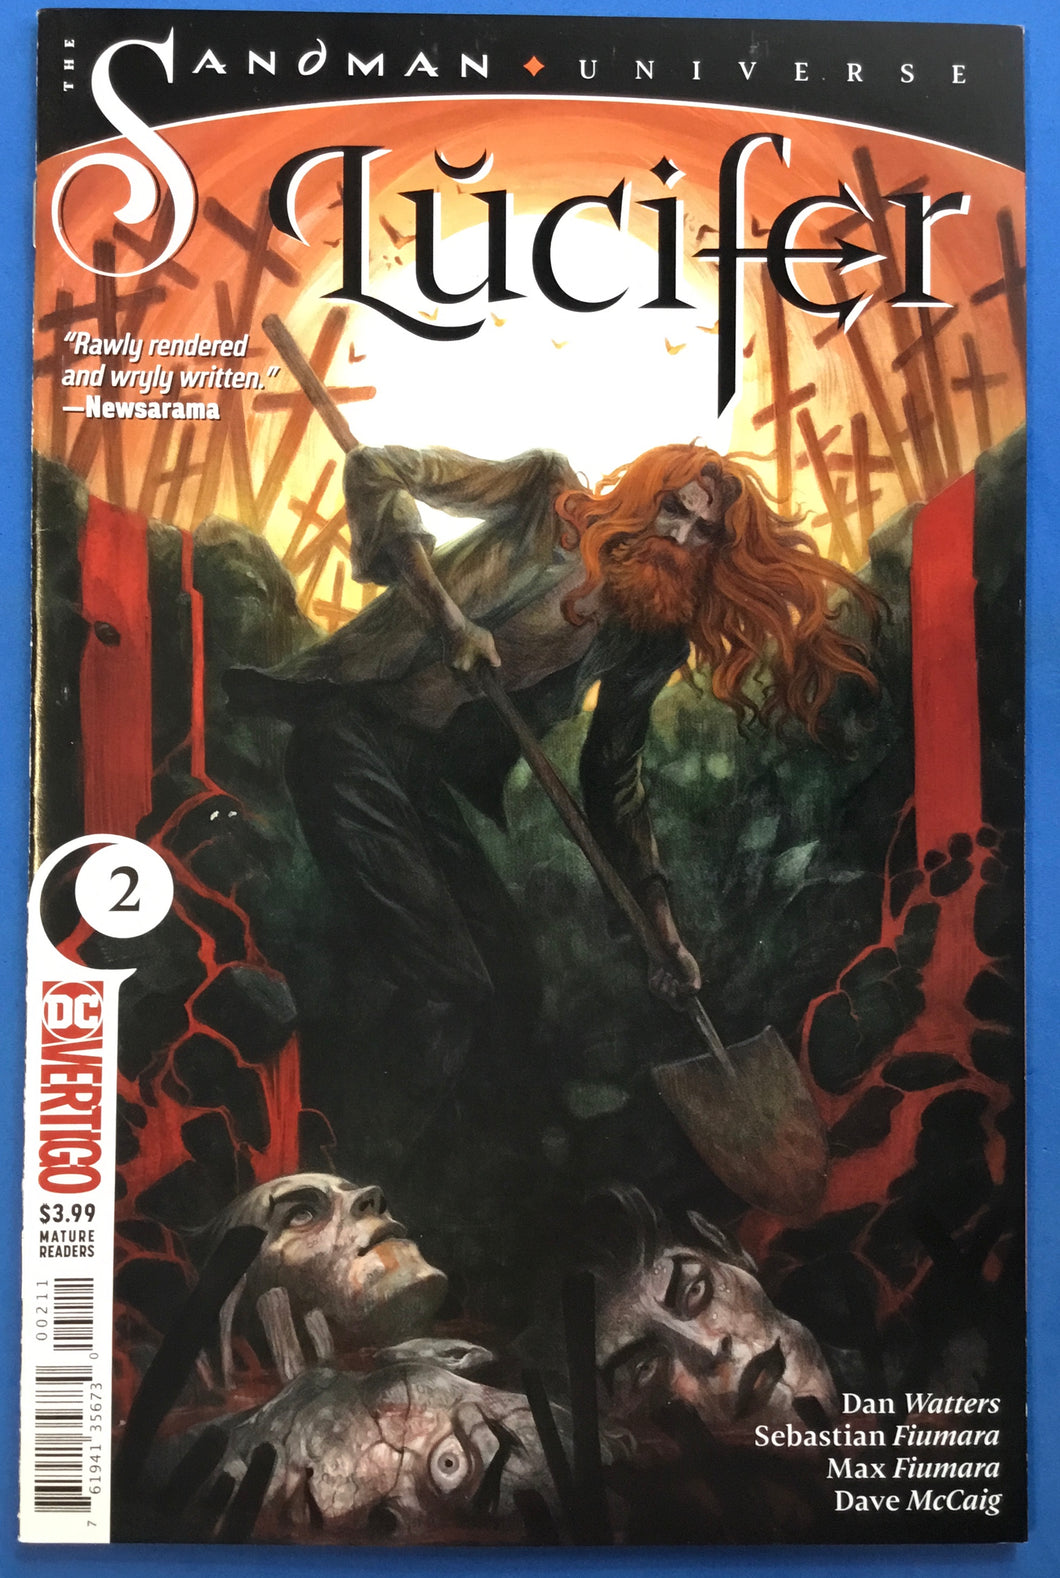 The Sandman Universe: Lucifer No. #2 2019 DC Vertigo Comics